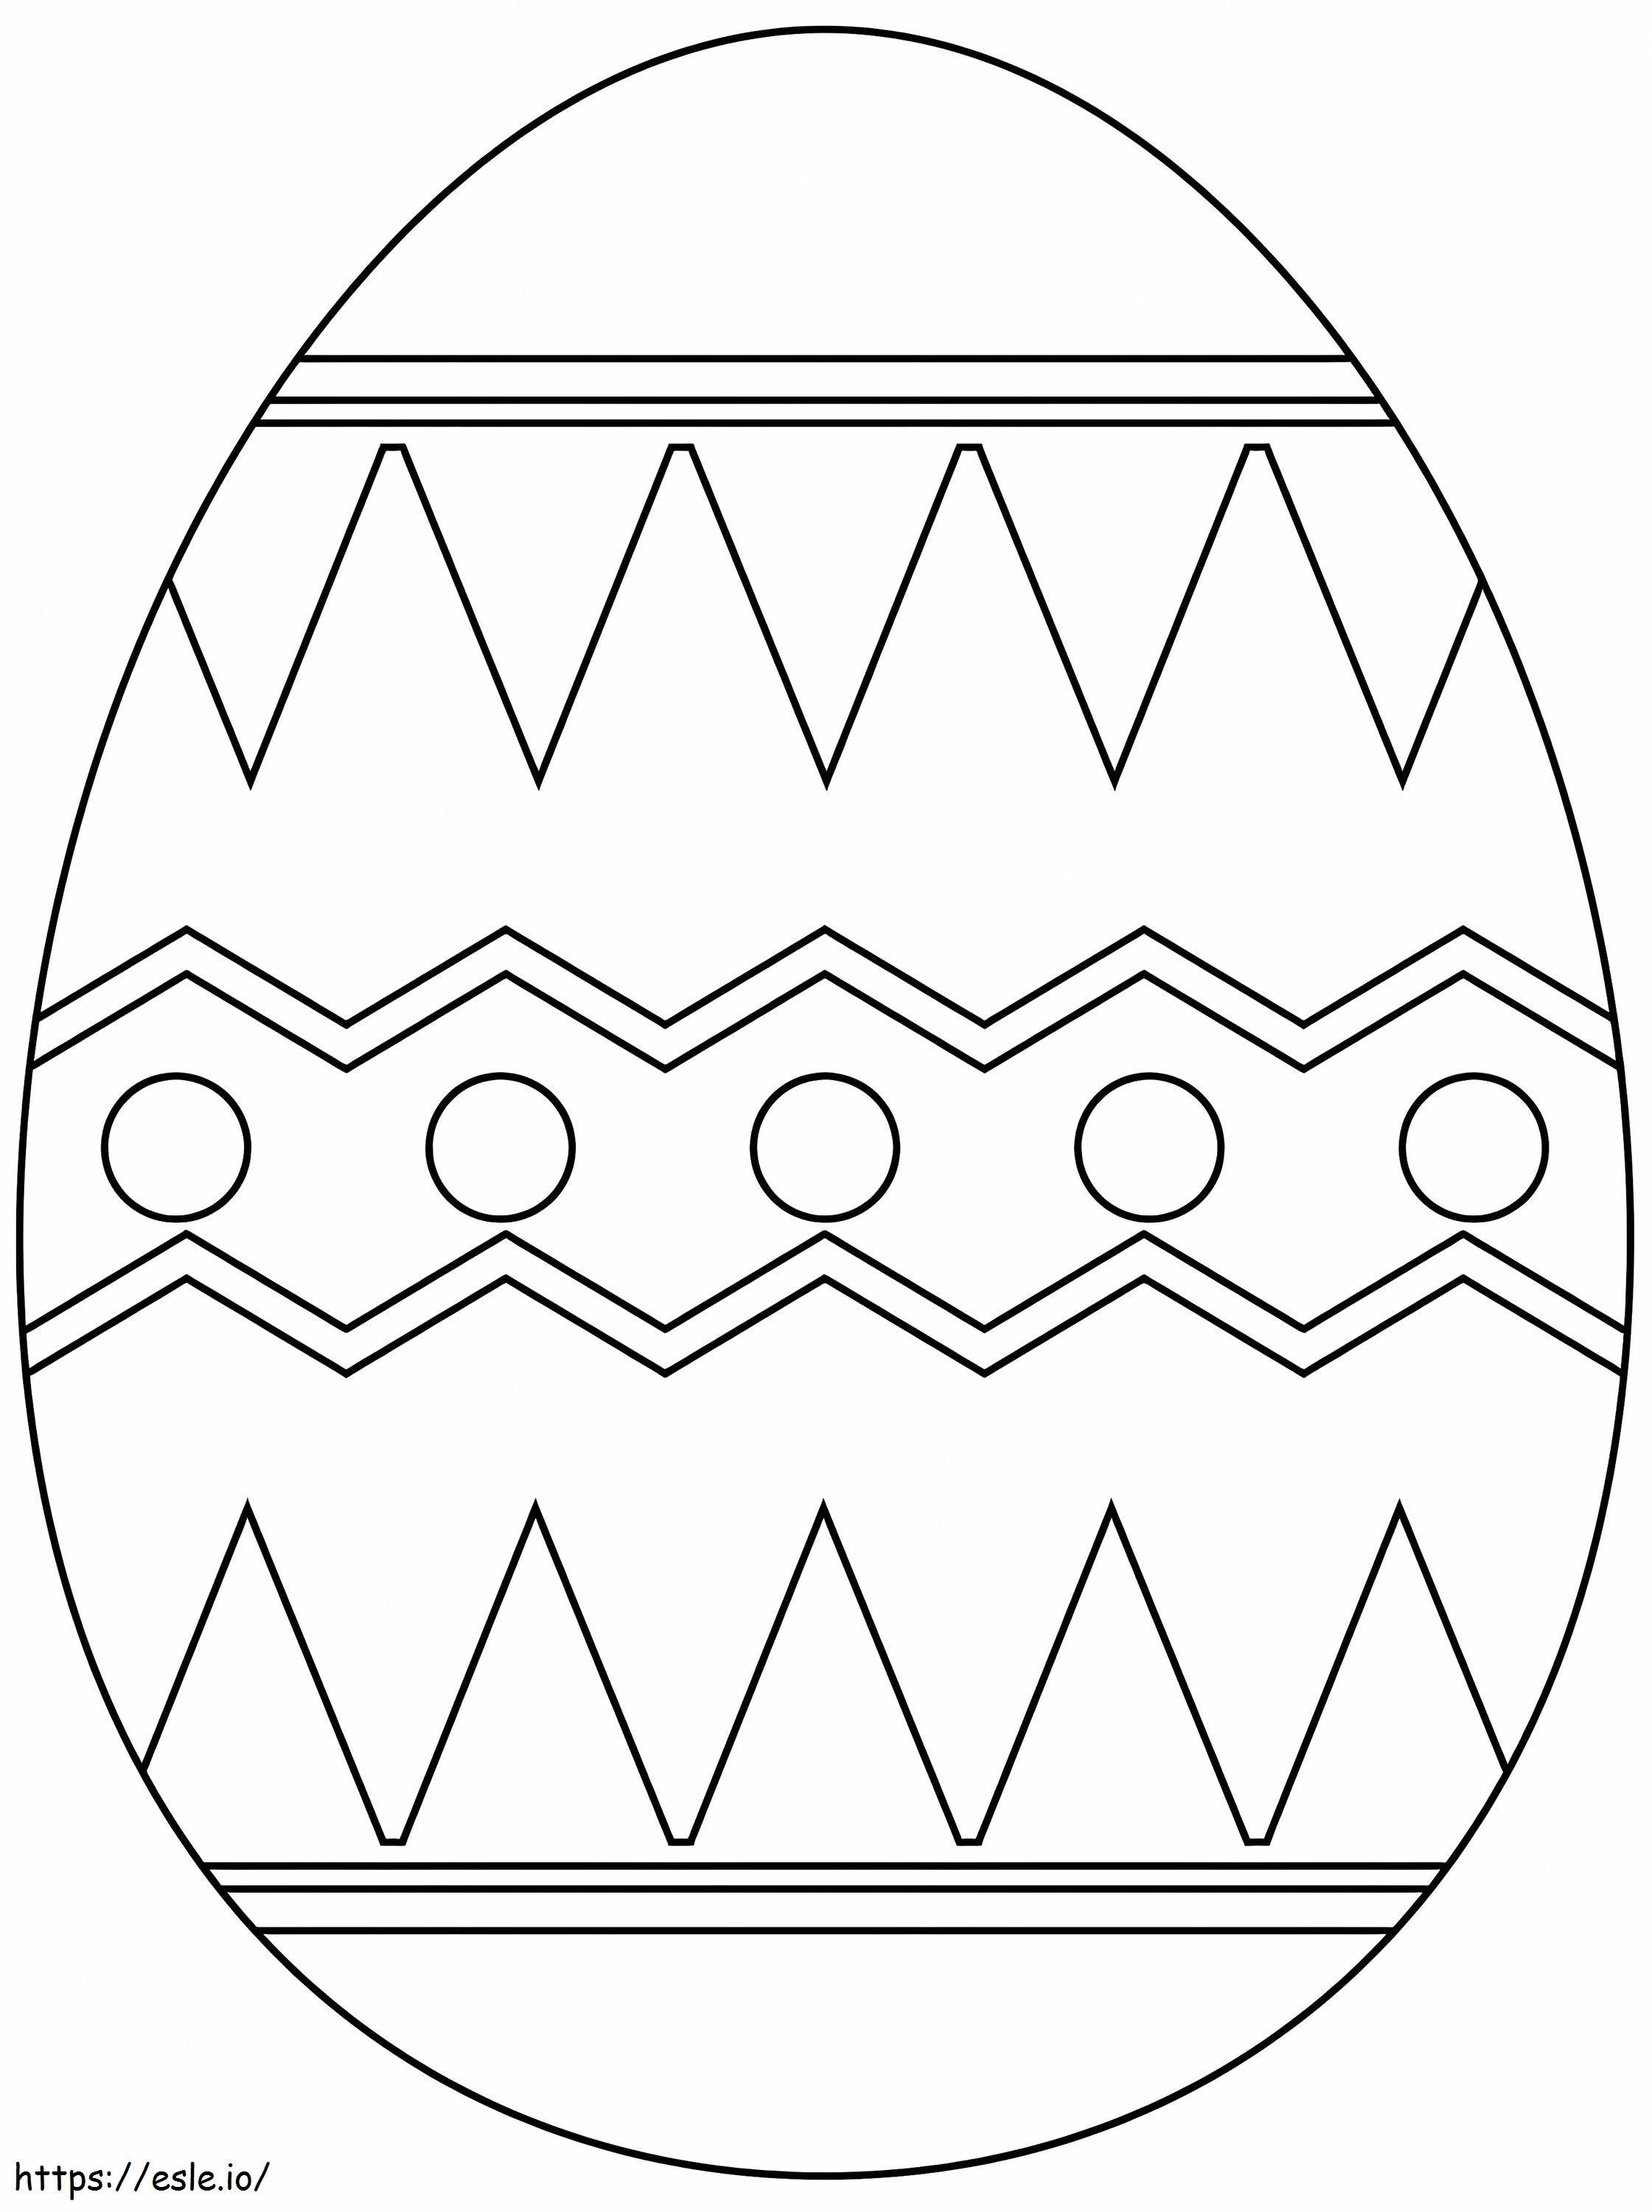 Coloriage Oeuf de Pâques mignon 4 à imprimer dessin